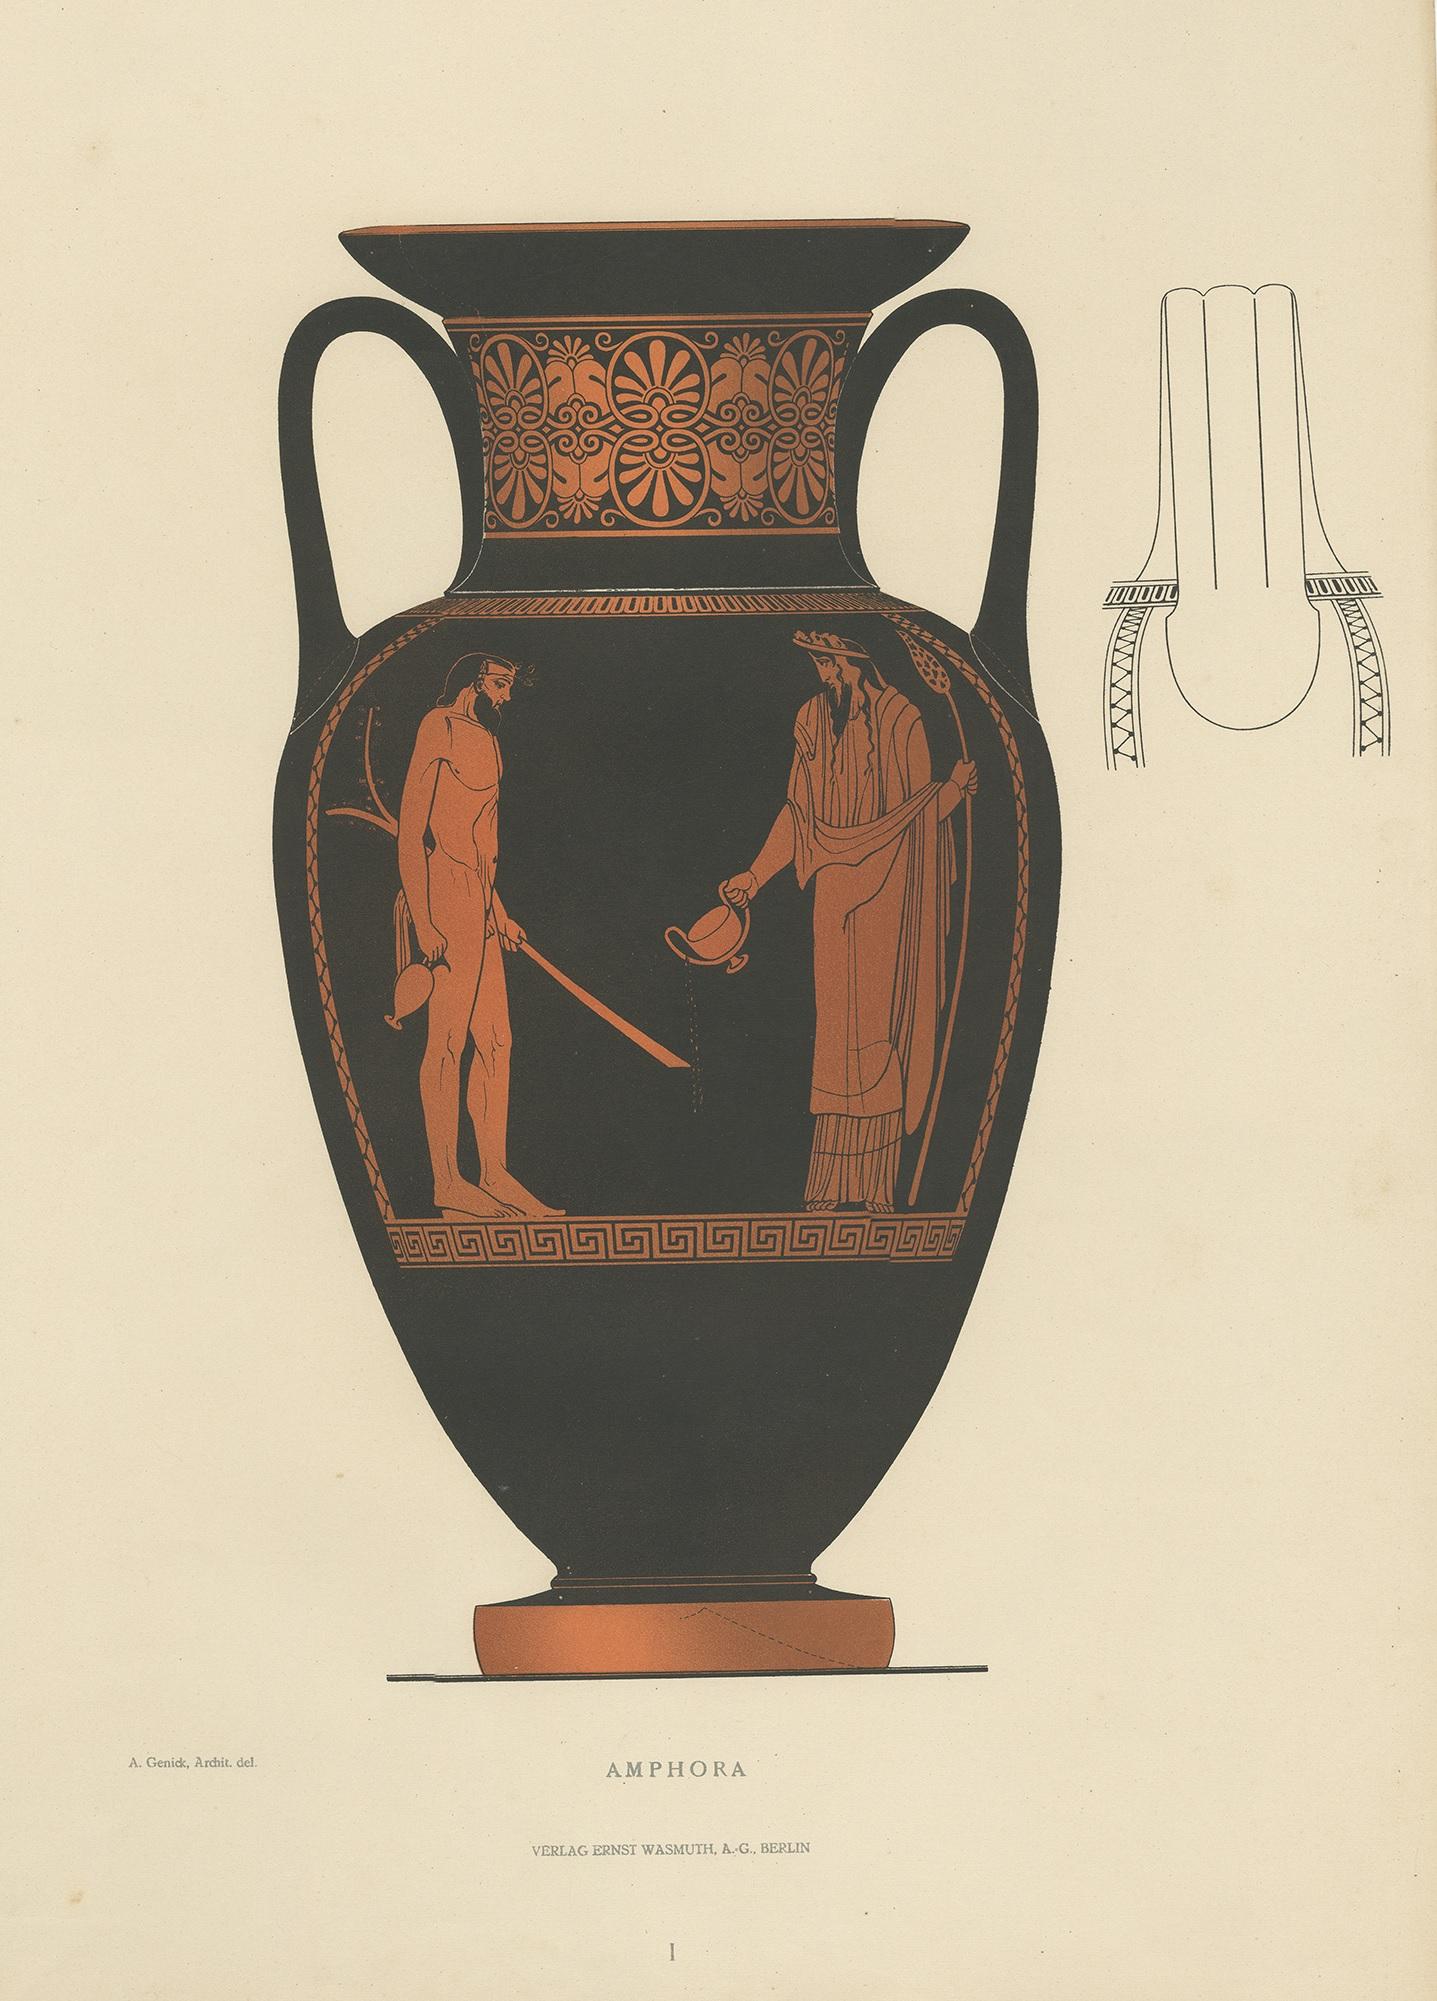 Estampe ancienne intitulée 'Amphora'. Grande lithographie imprimée en couleur d'Ernst Wasmuth représentant une Amphora grecque. Cette estampe est tirée de l'ouvrage 